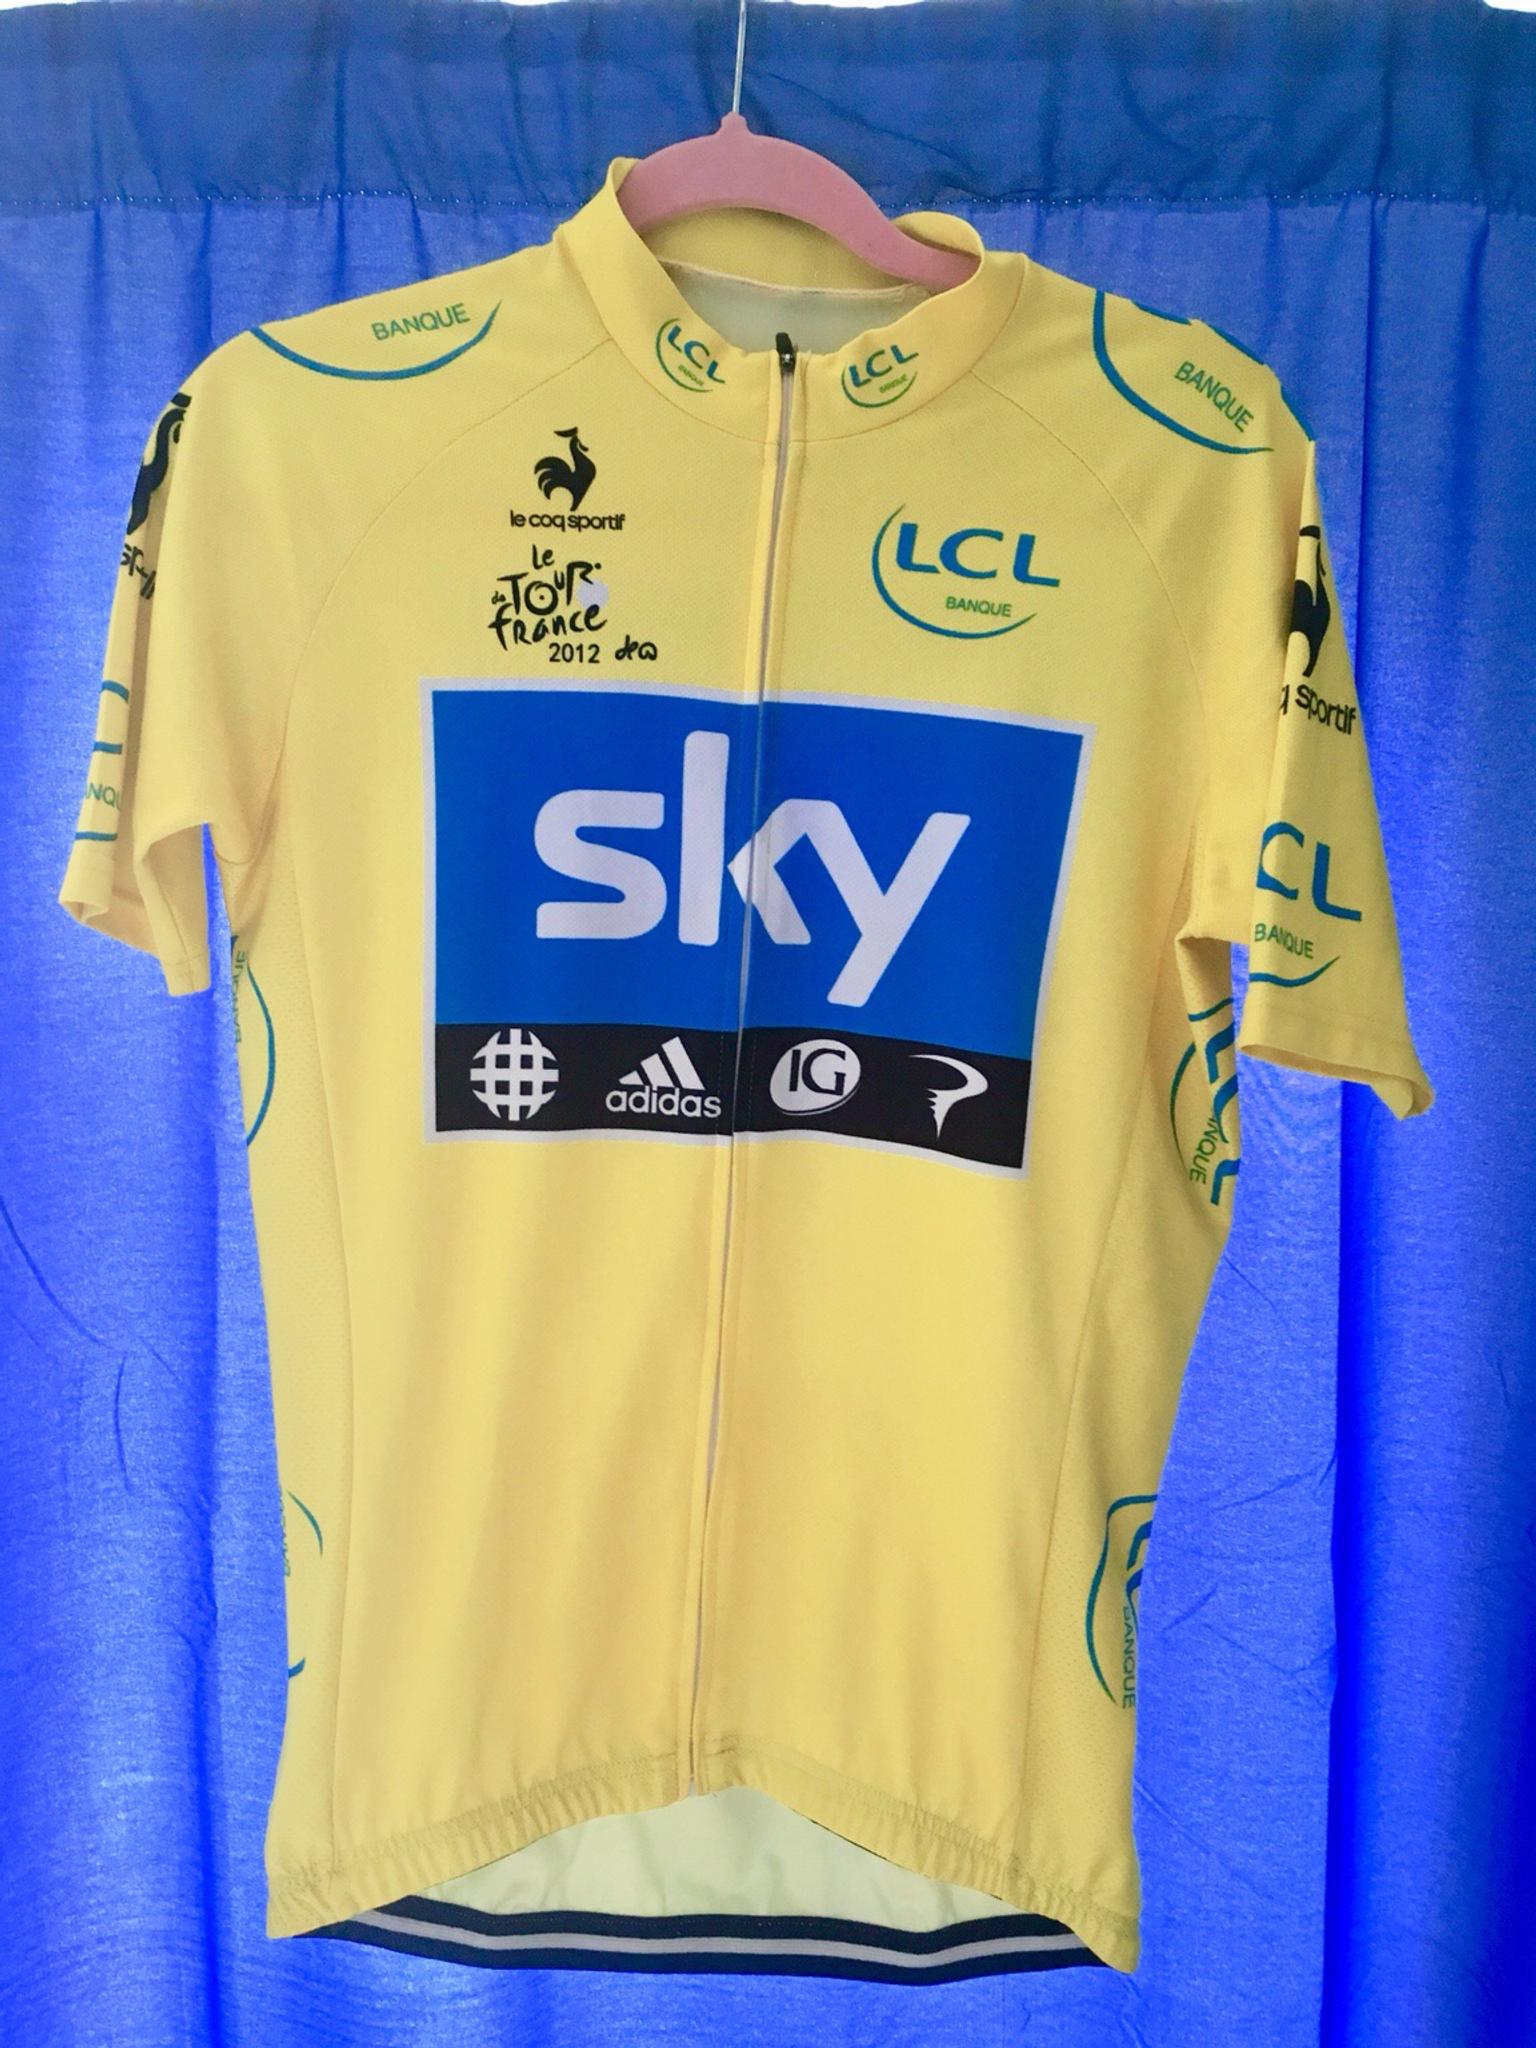 tour de france yellow jersey for sale